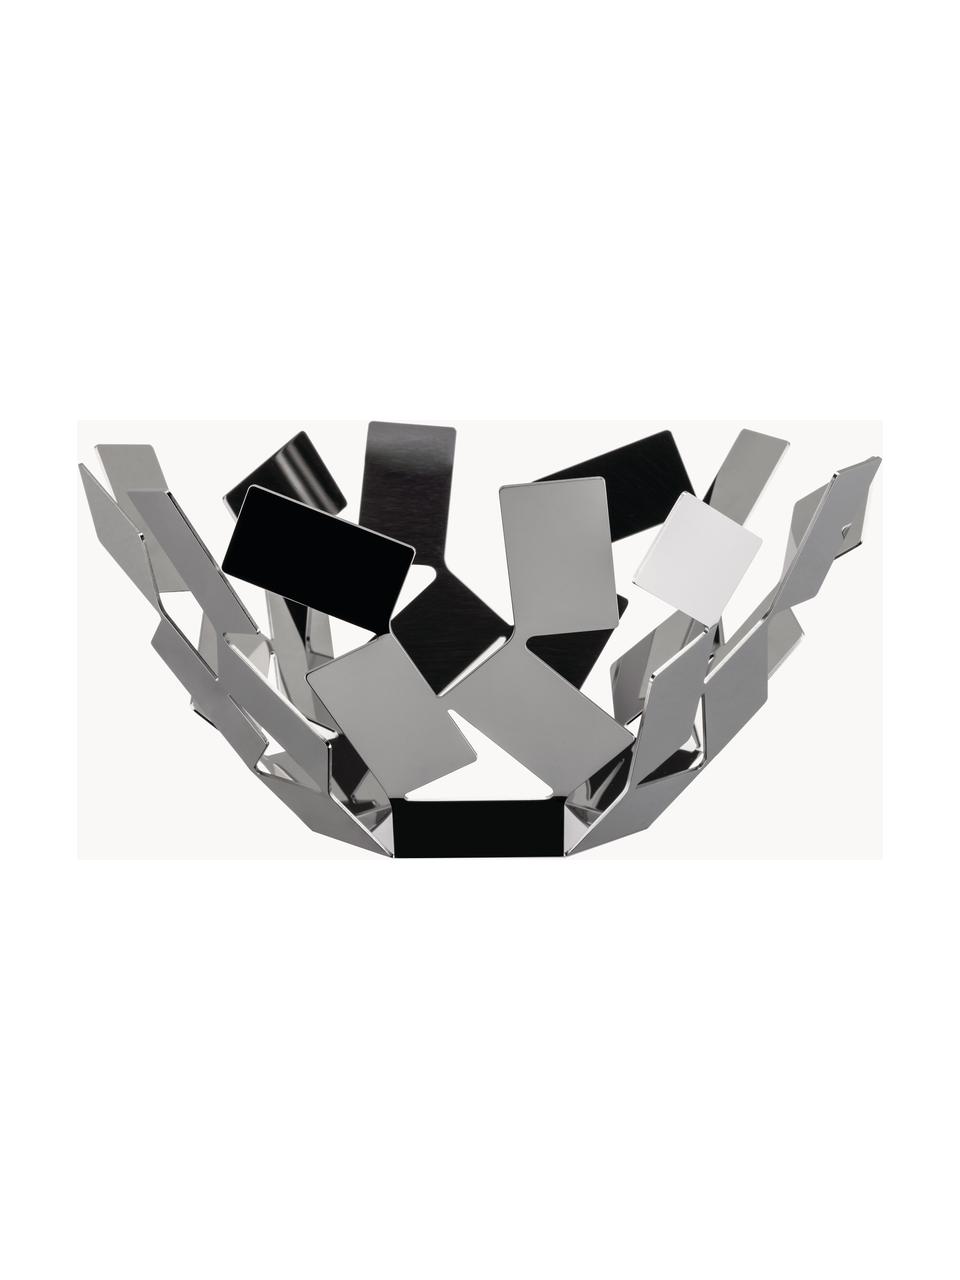 Obstschale La Stanza aus Edelstahl, Edelstahl 18/10, hochglanzpoliert, Silberfarben, Ø 13 x H 27 cm